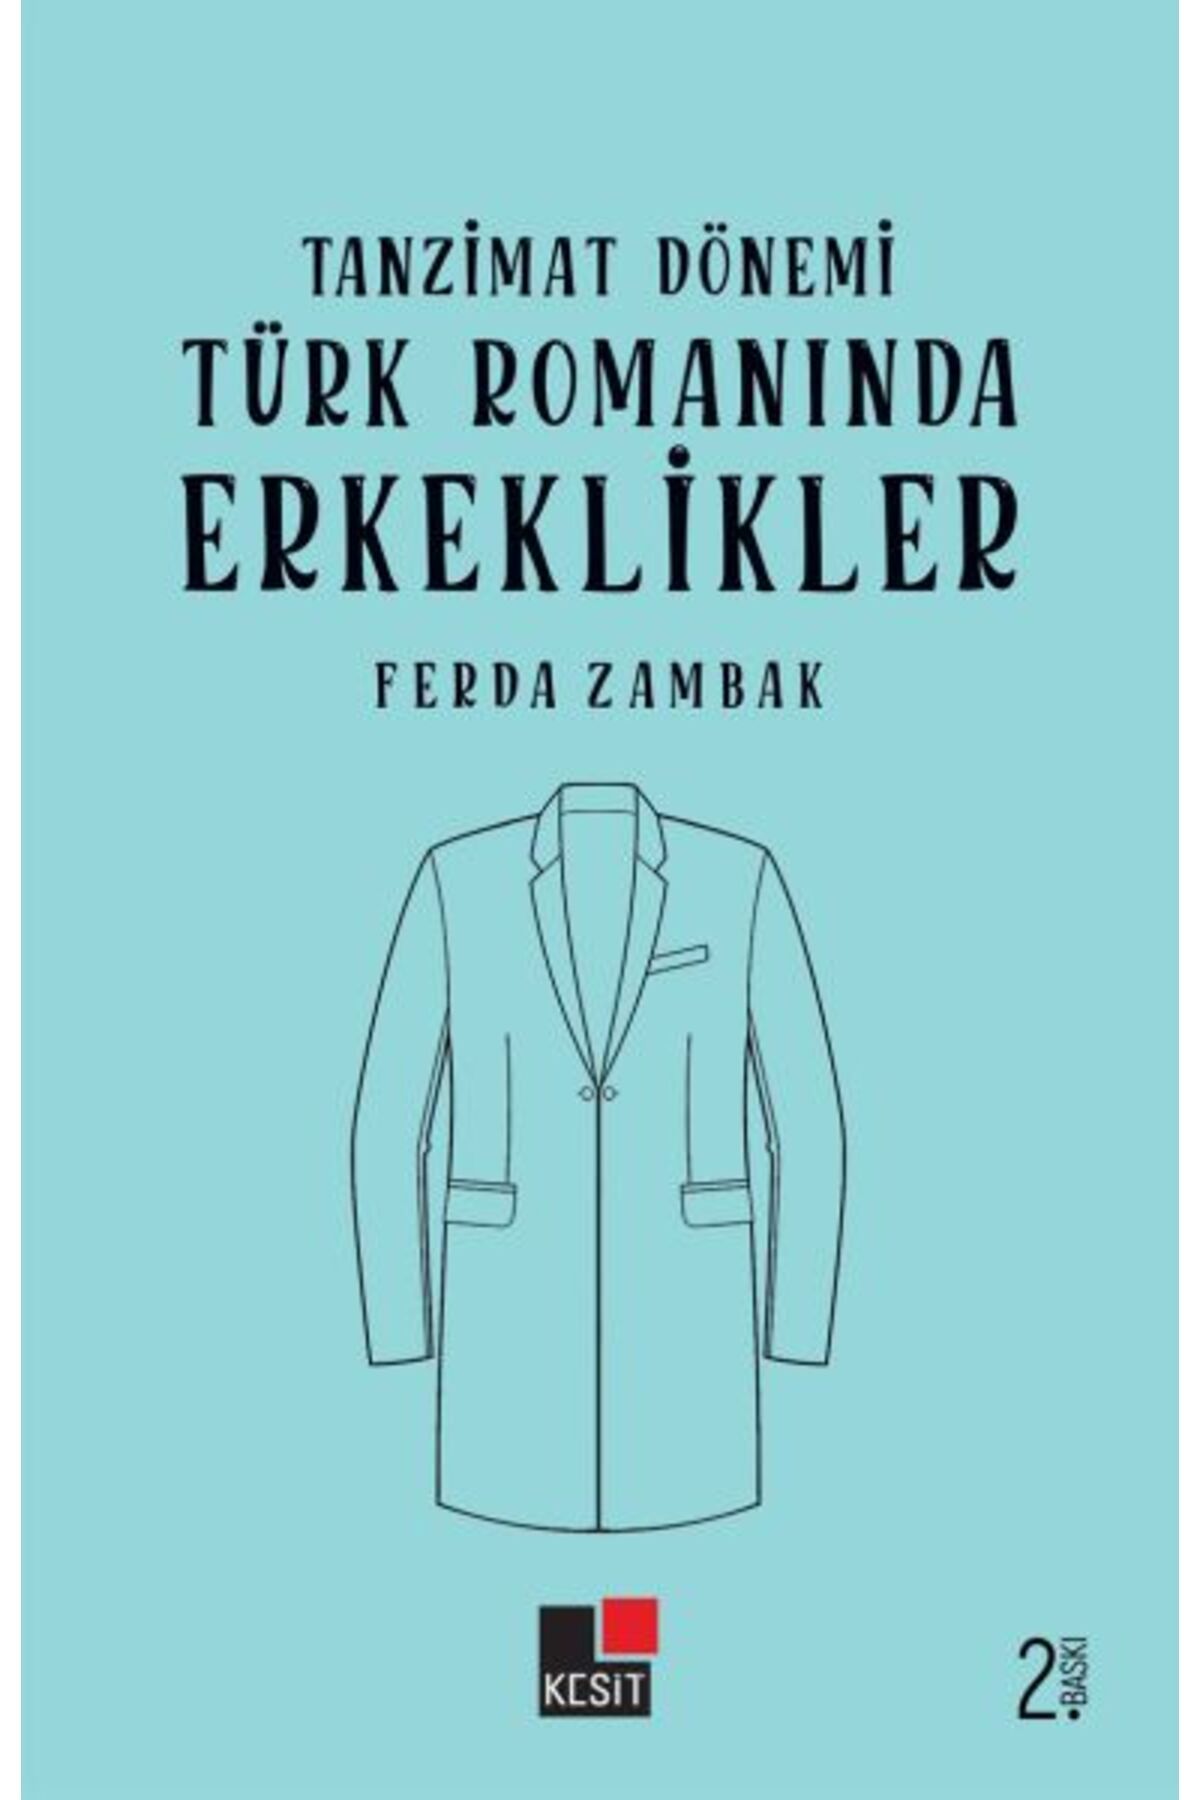 Kesit Yayınları Tanzimat Dönemi Türk Romanlarında Erkeklikler